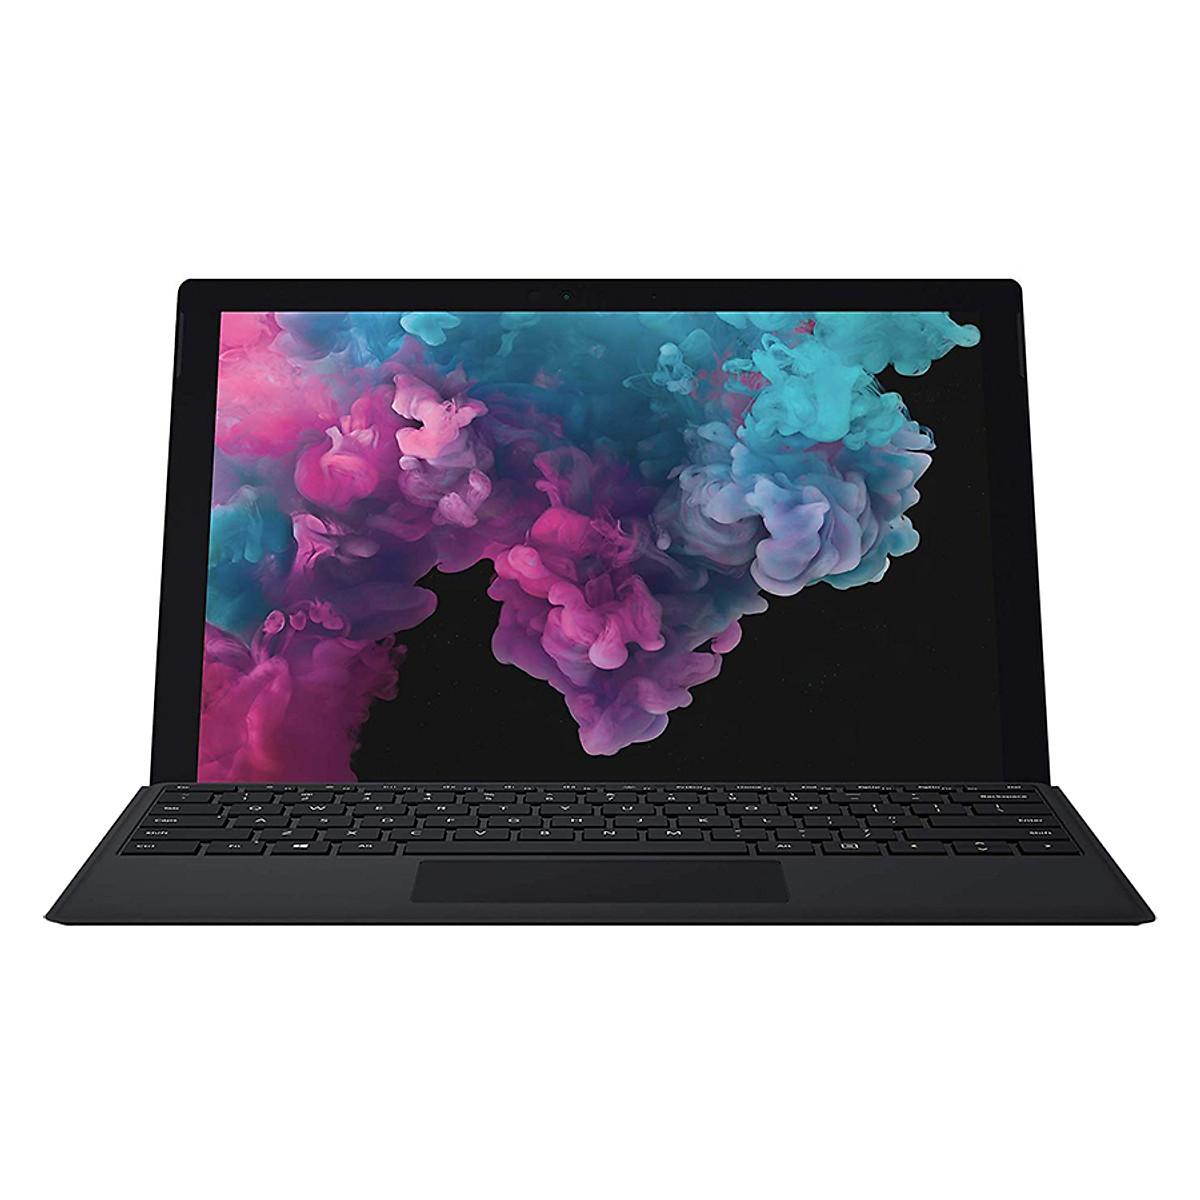 So Sánh Giá Laptop Microsoft Surface Pro 6 2018 12.3" (i5/8GB/256GB)